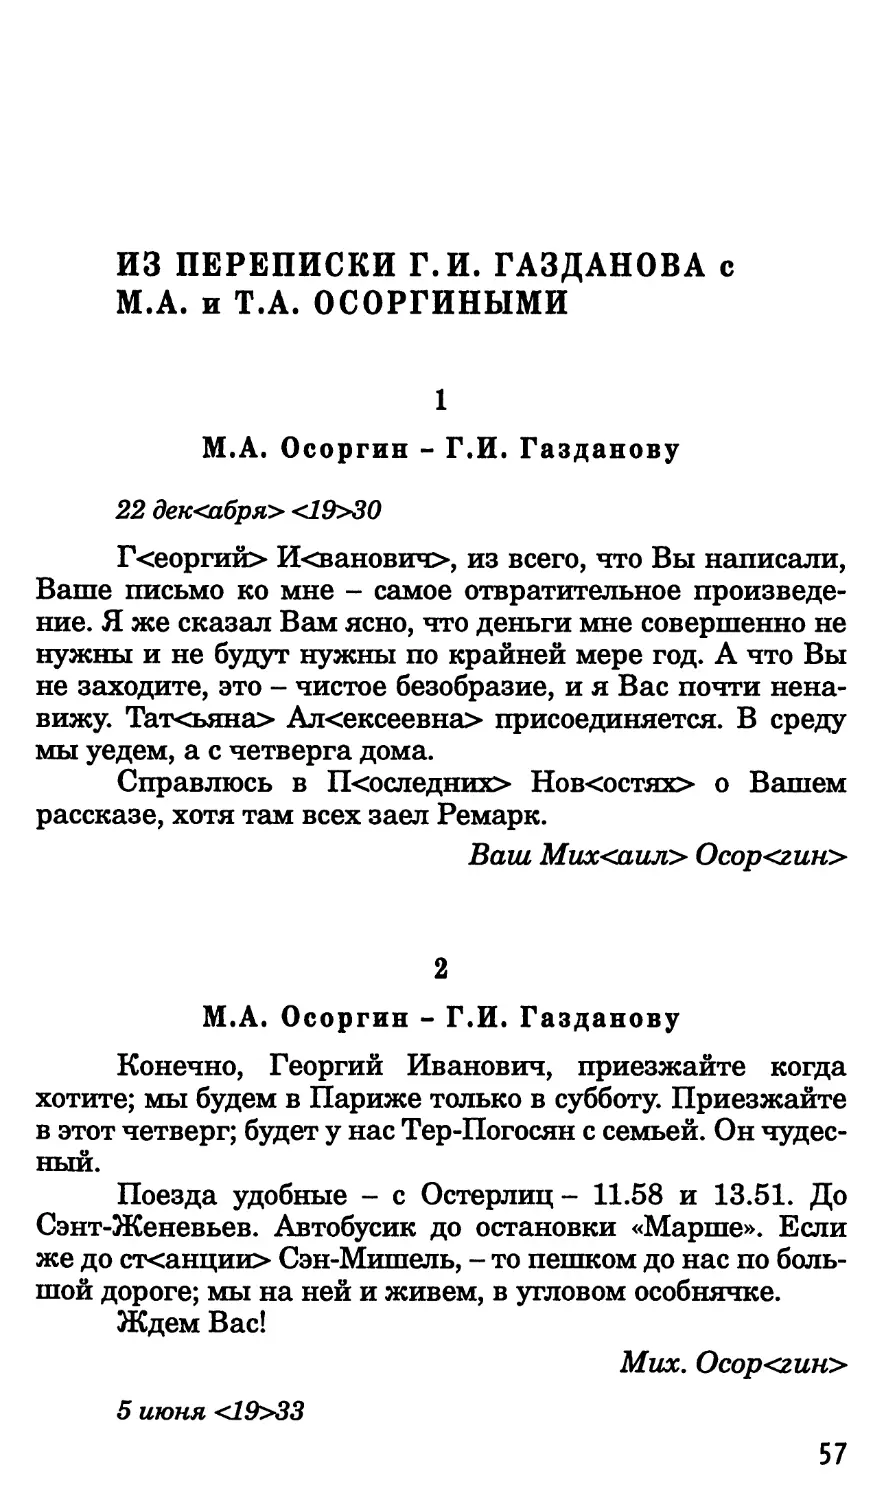 Из переписки Г.И. Газданова с М.А. и Т.Л. Осоргиными
2. М.А. Осоргин-Г.И. Газданову. 5 июня 1933 г.